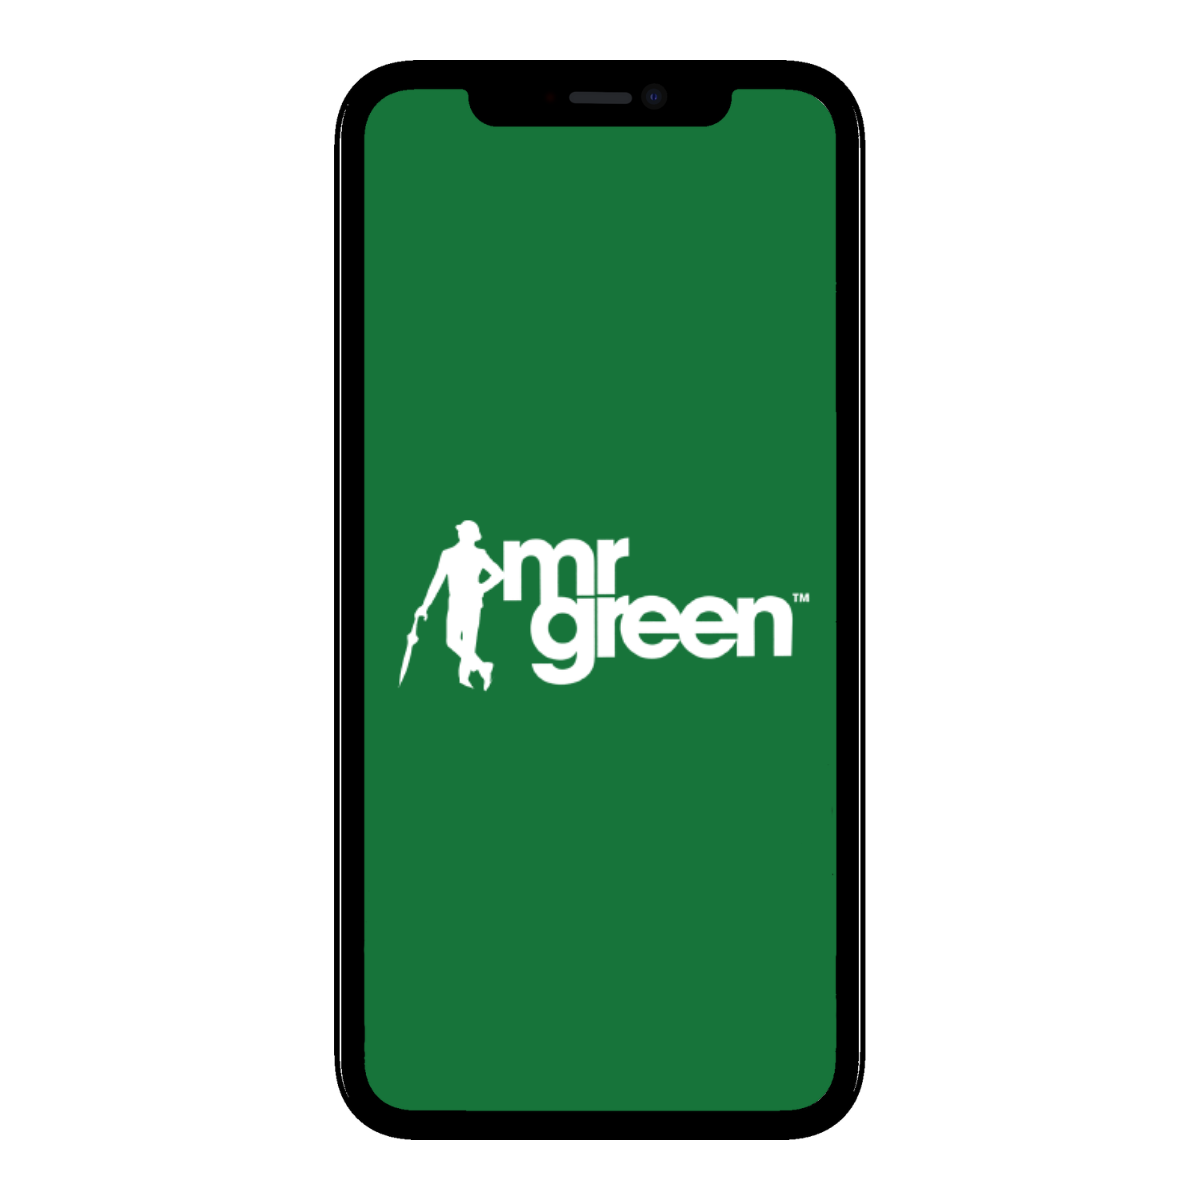 mr green app